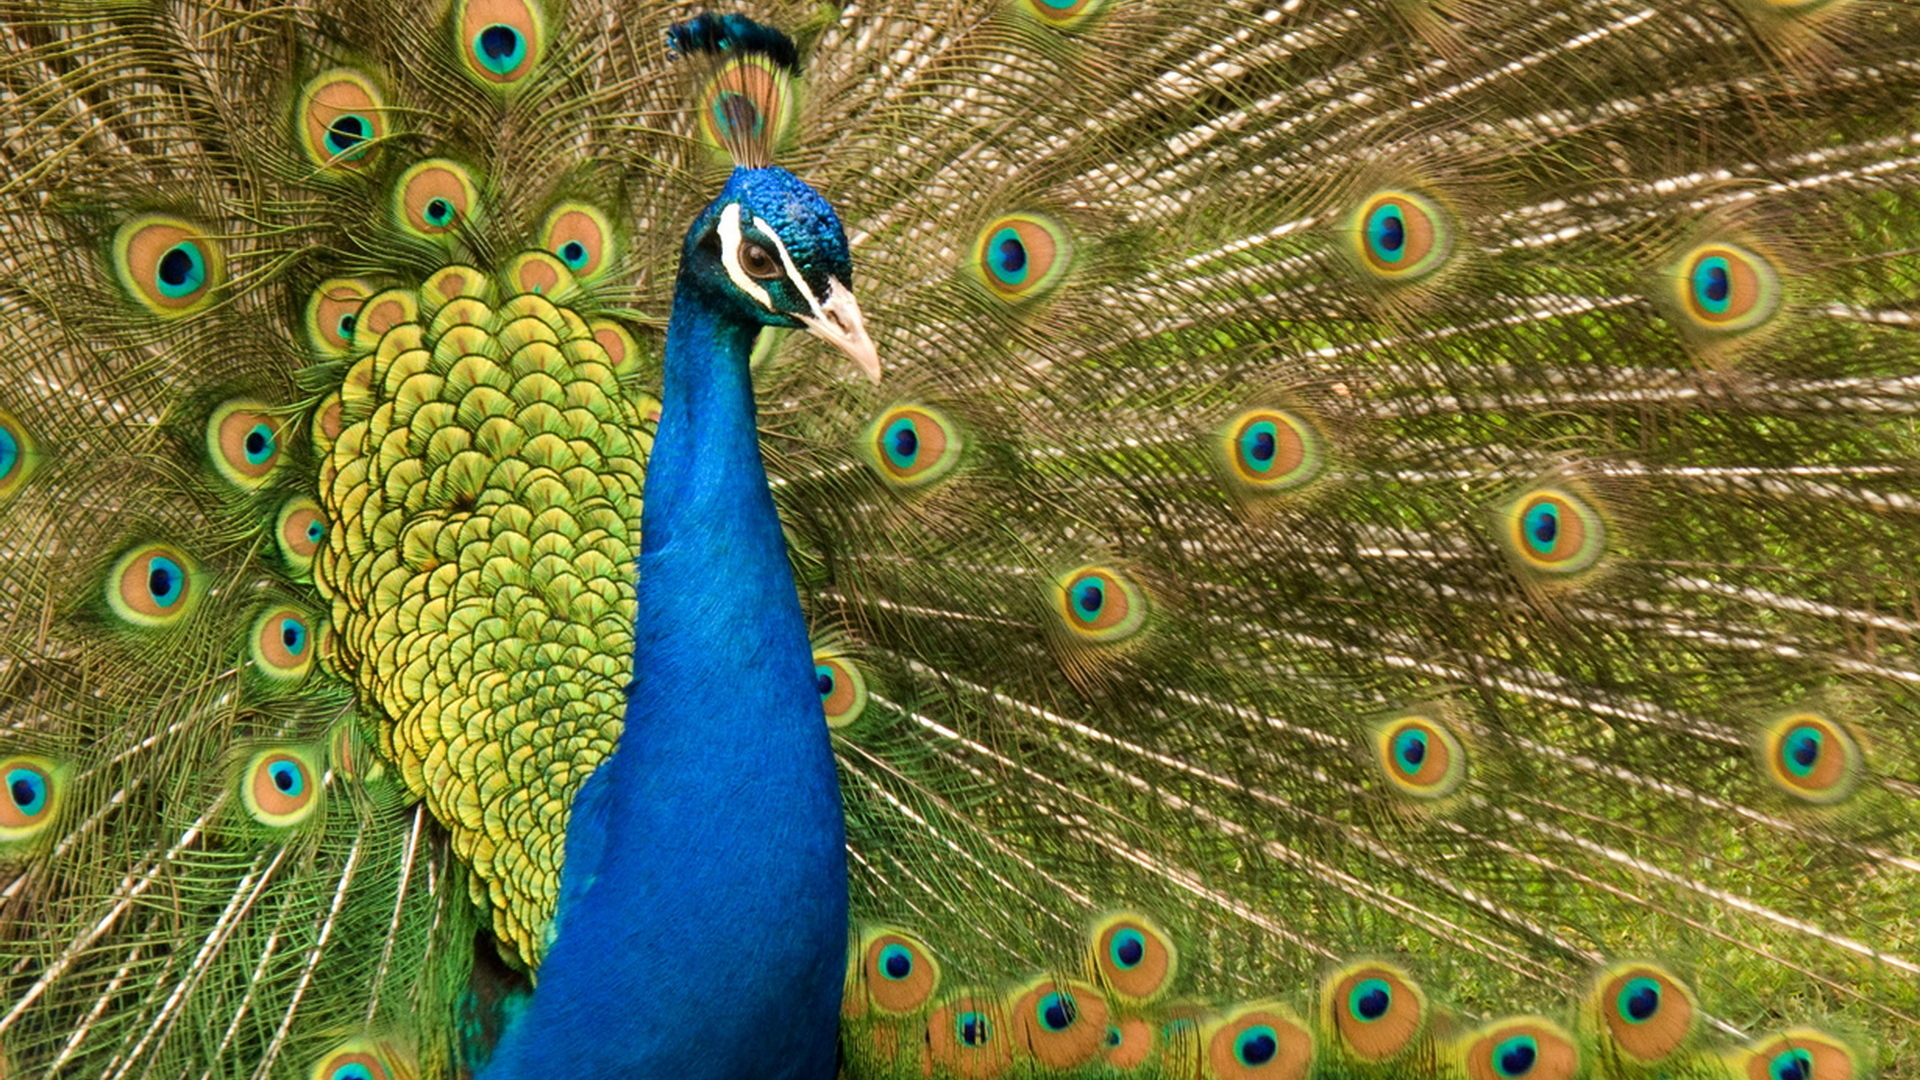 نگاره ای دلنشین از طاووس زیبا با پر های چشم نظر آبی با کیفیت اچ دی